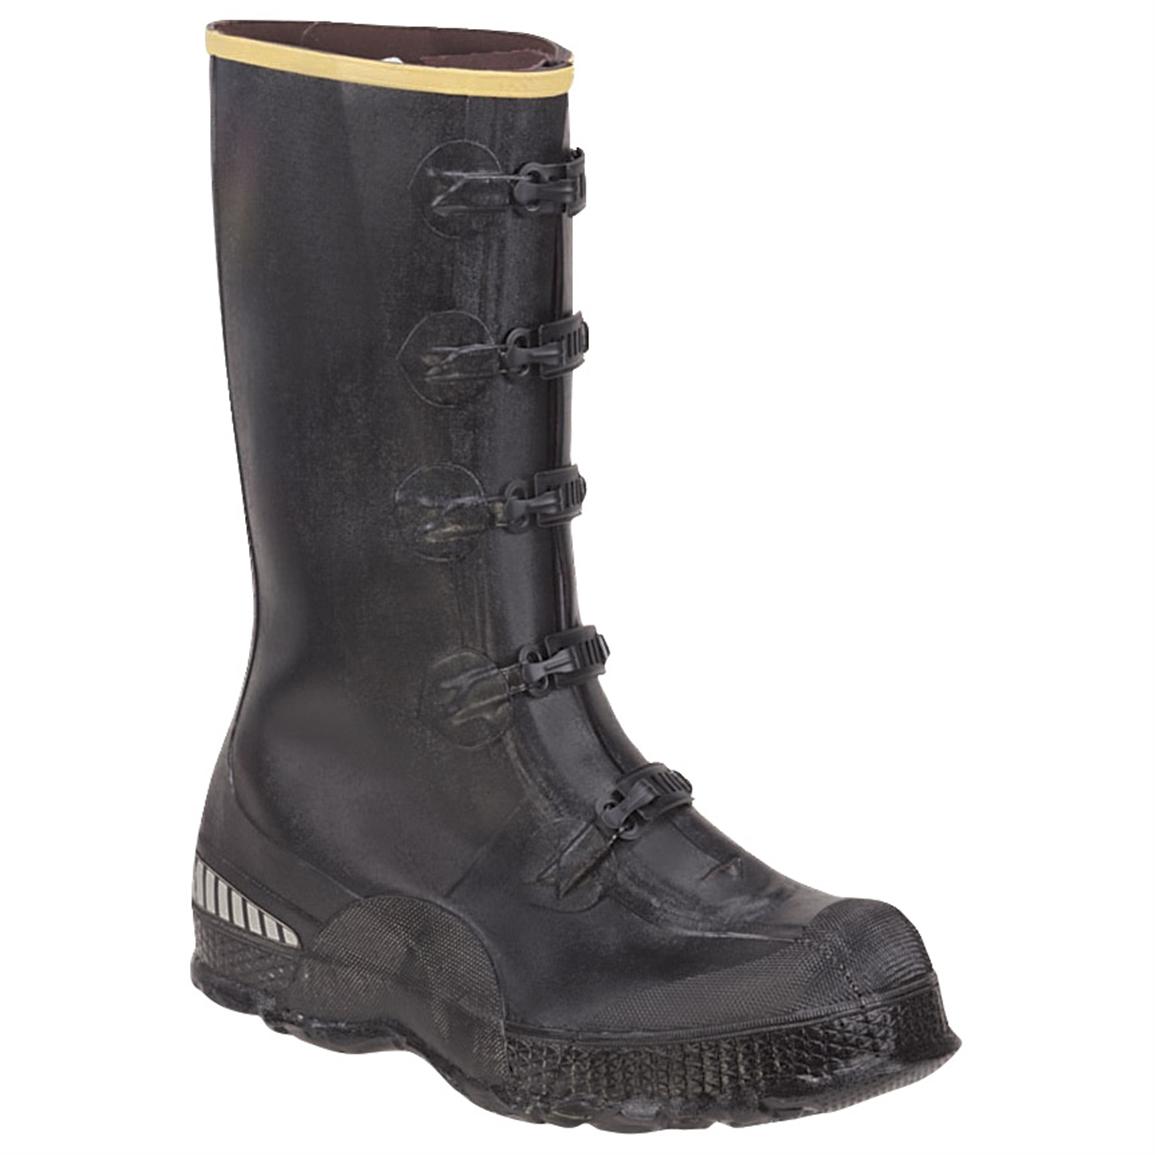 Men's LaCrosse® 14 inch ZXT Premium 5-buckle Overshoe Work Boots, Black